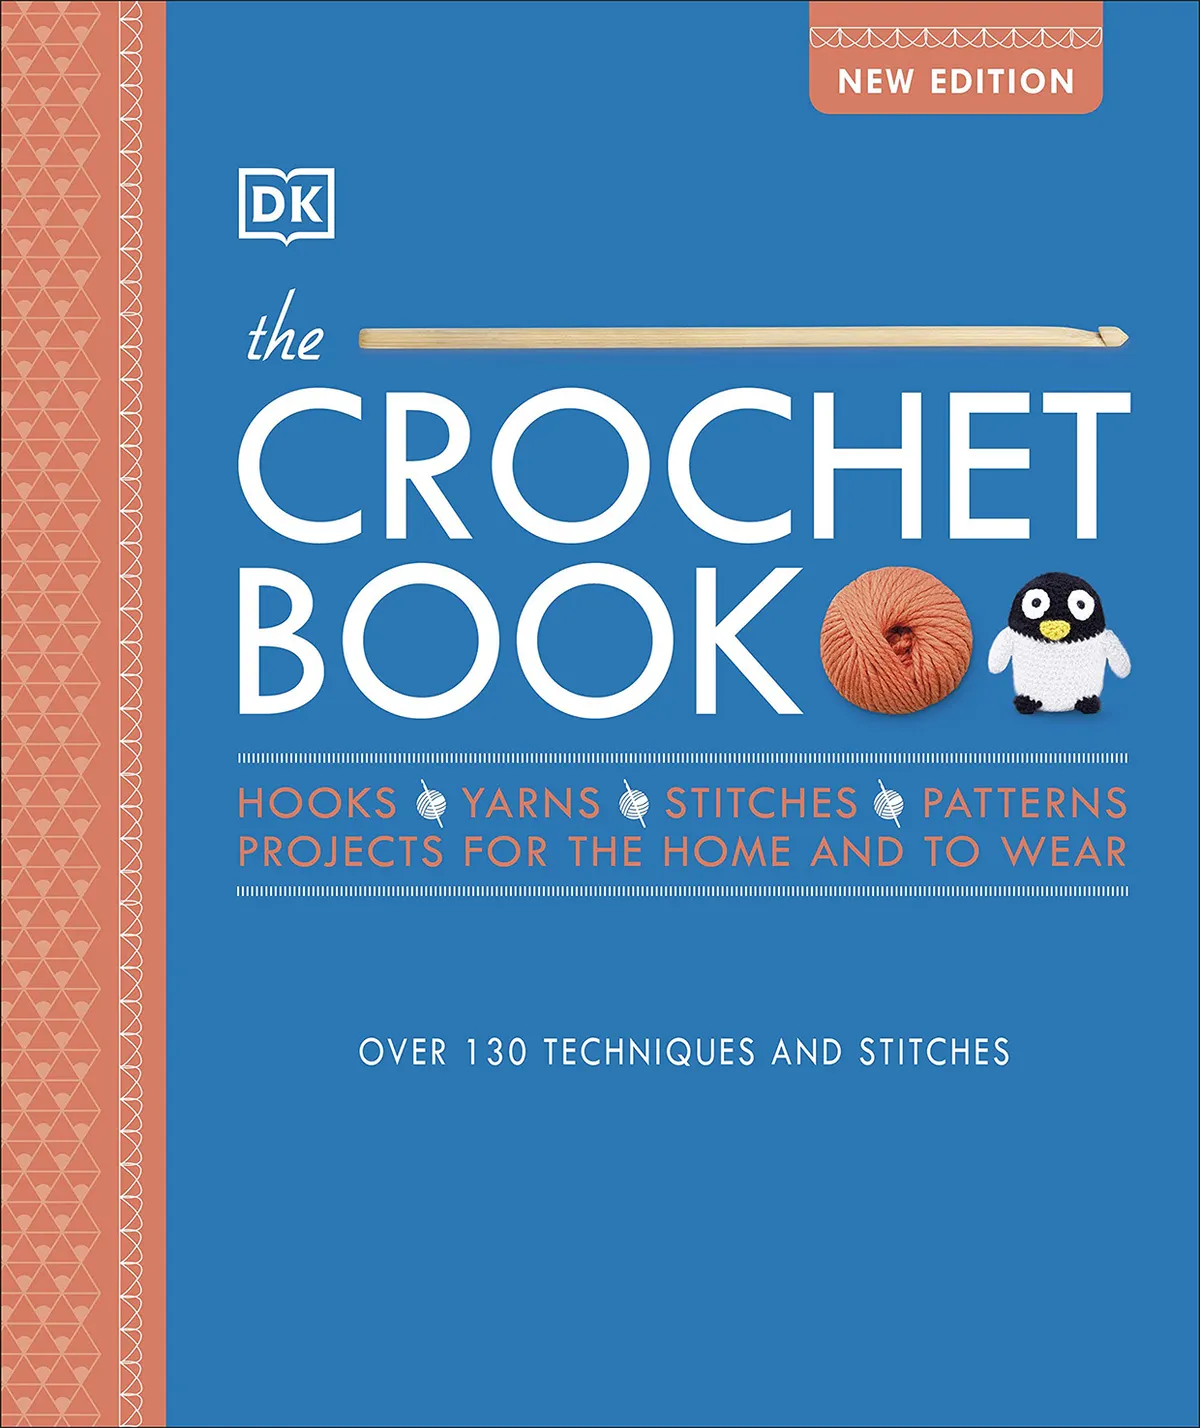 DK crochet book